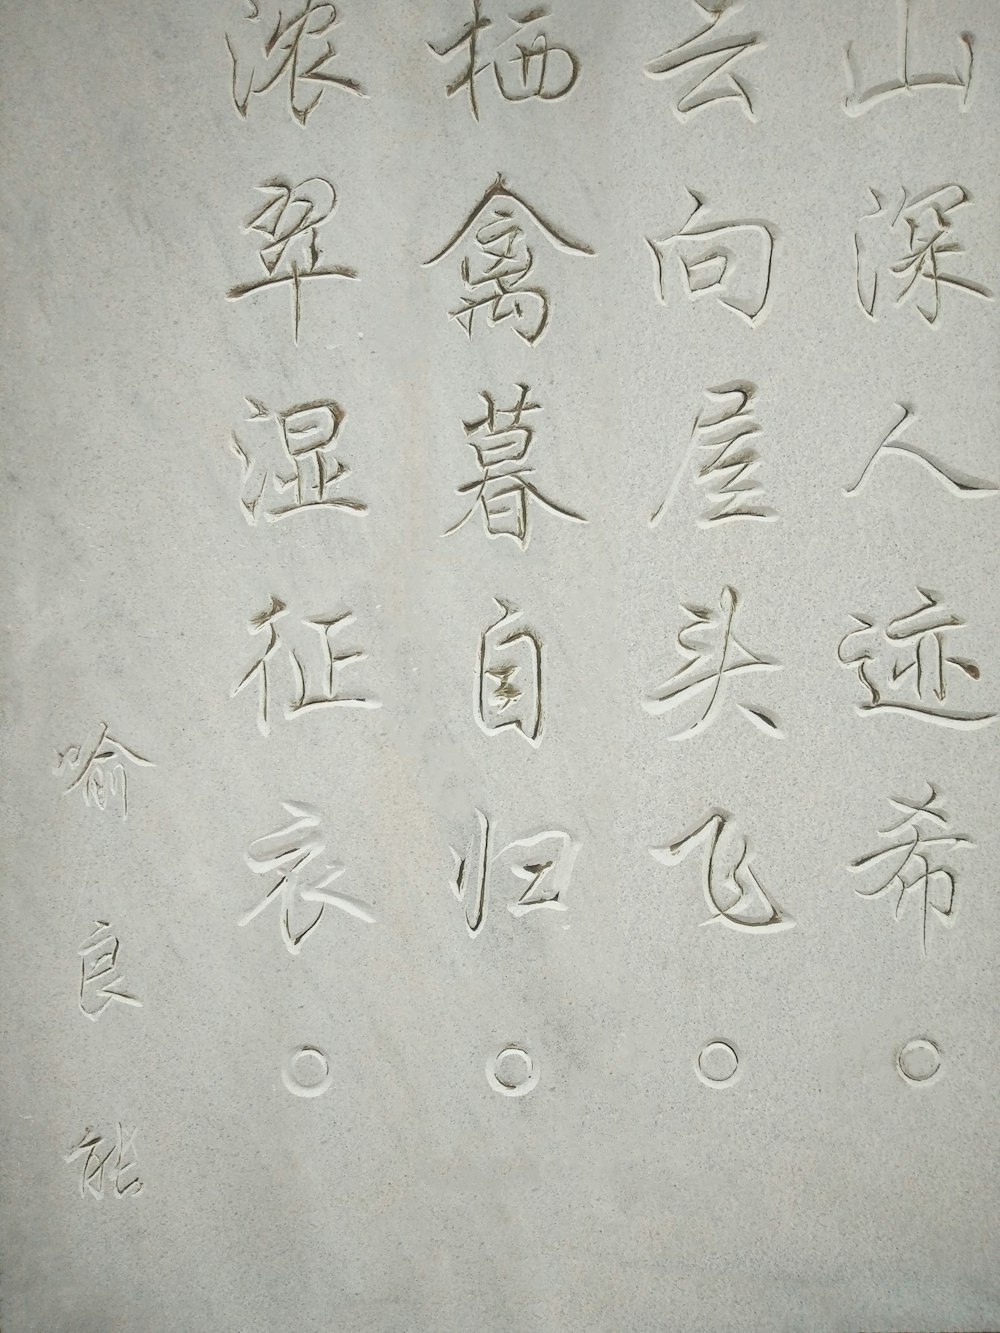 kanji script